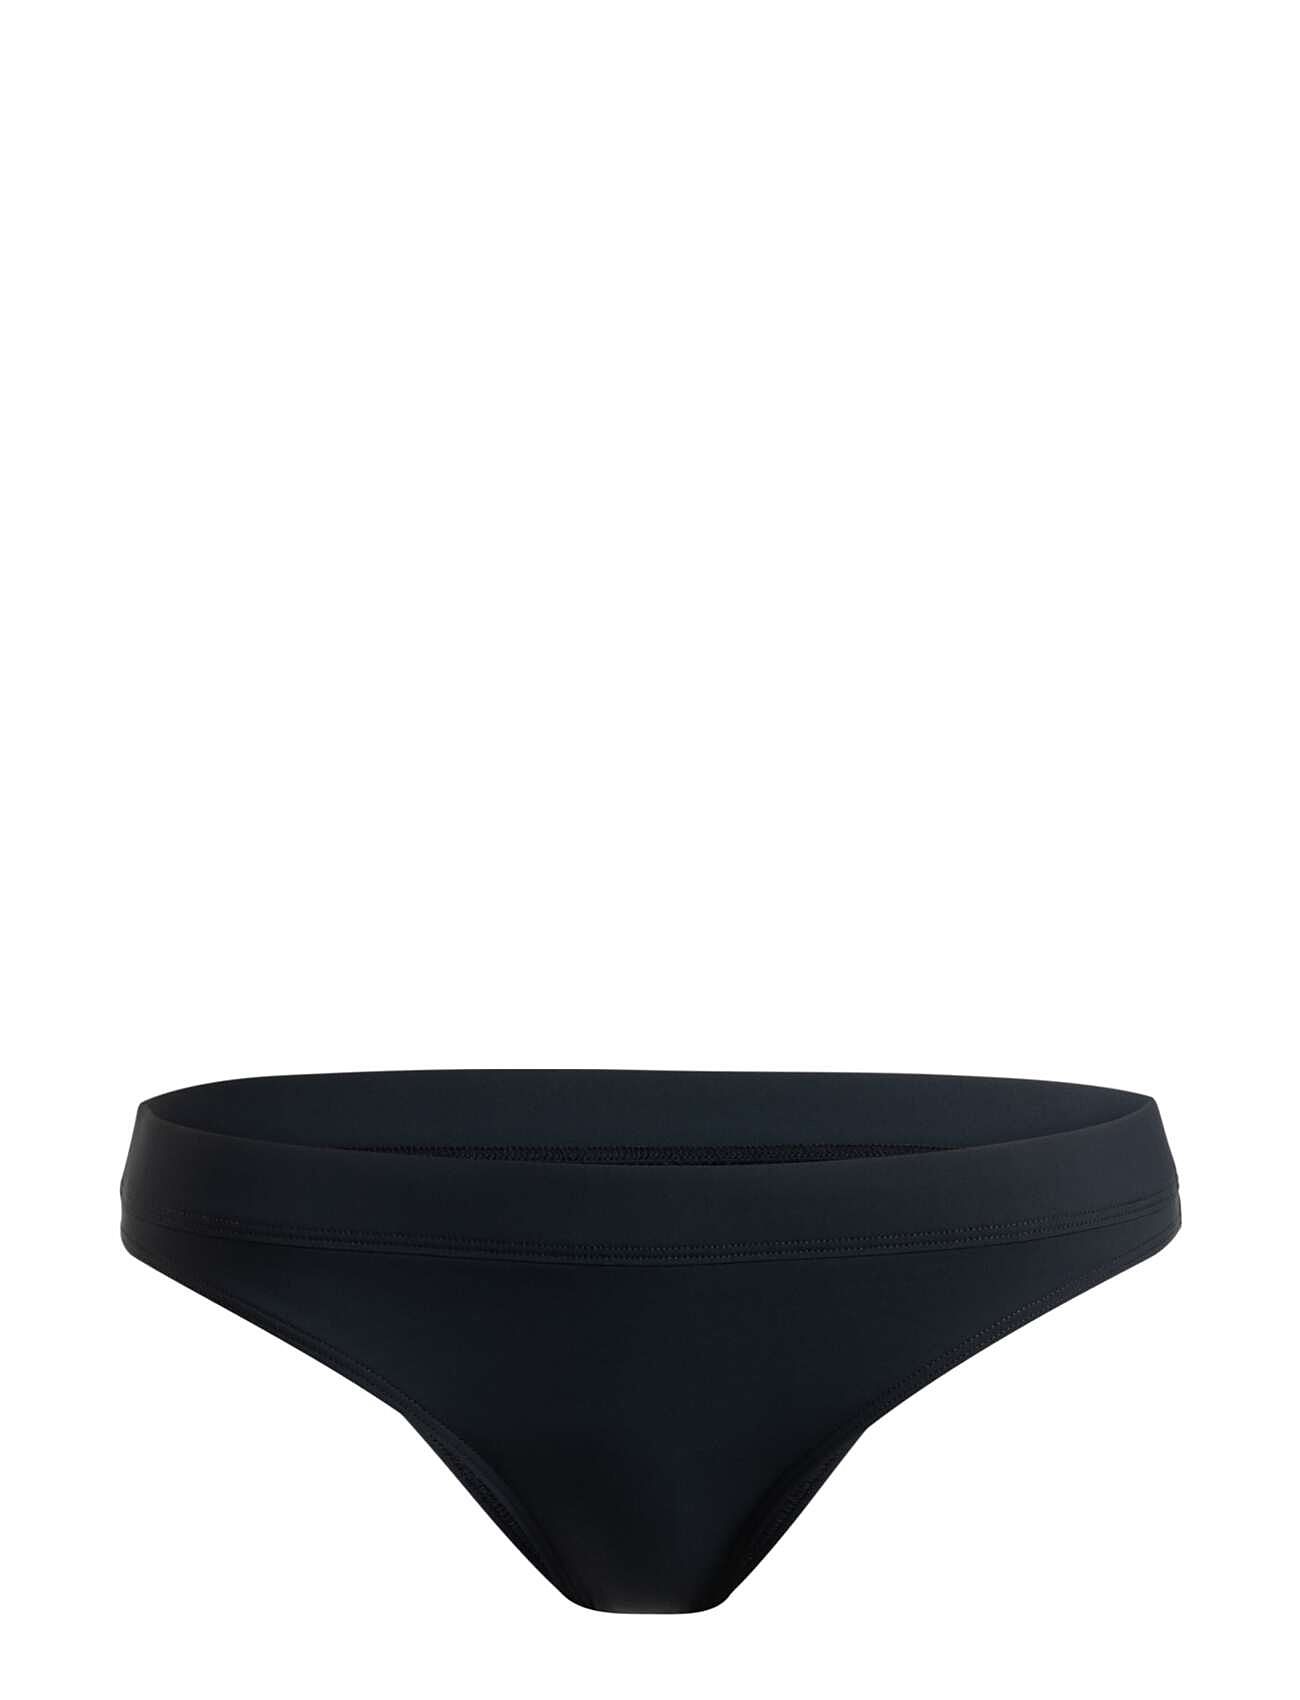 Roxy Active Bikini Sd Swimwear Bikinis Bikini Bottoms Bikini Briefs Black Roxy